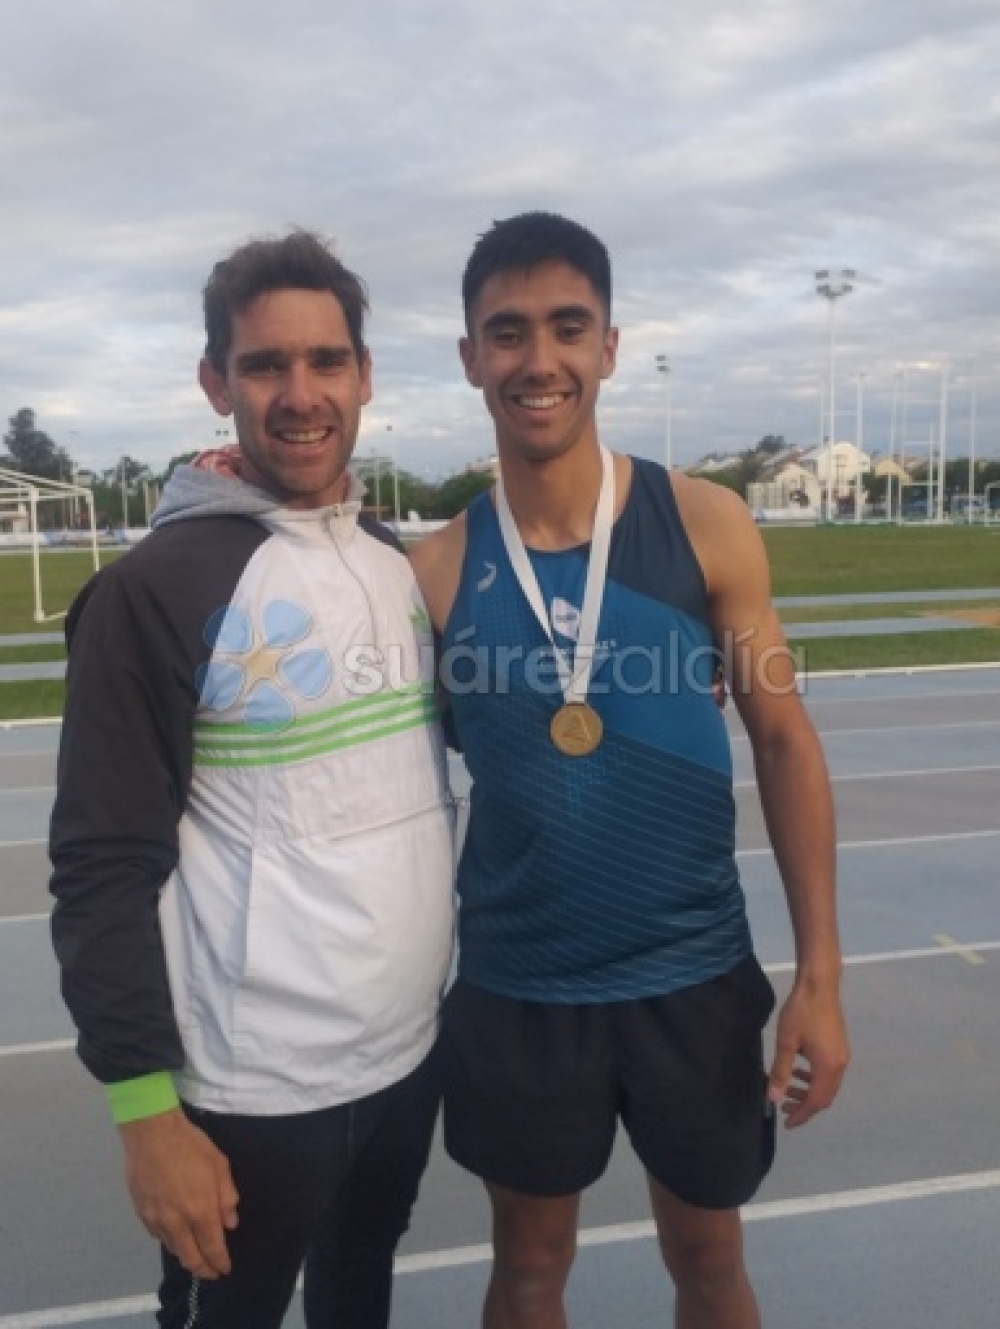 Máximo Peratz Campeón Argentino en posta 4x400 y Sub Campeón en 400 metros
